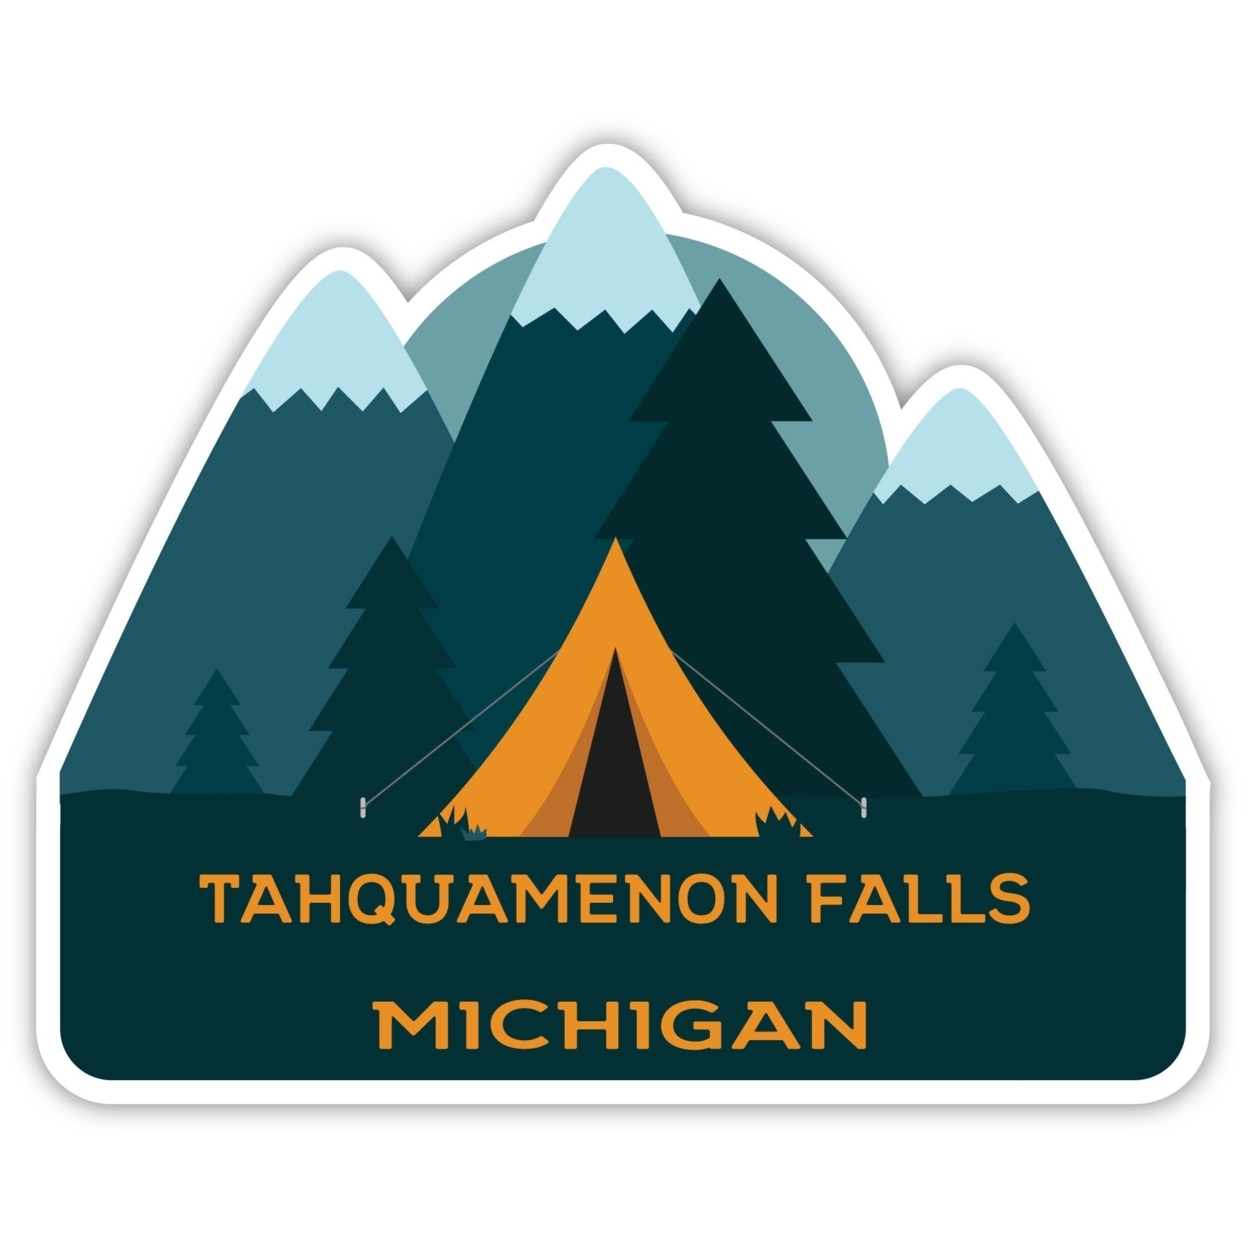 Tahquamenon Falls Michigan Souvenir Decorative Stickers (Choose Theme And Size) - Single Unit, 2-Inch, Tent